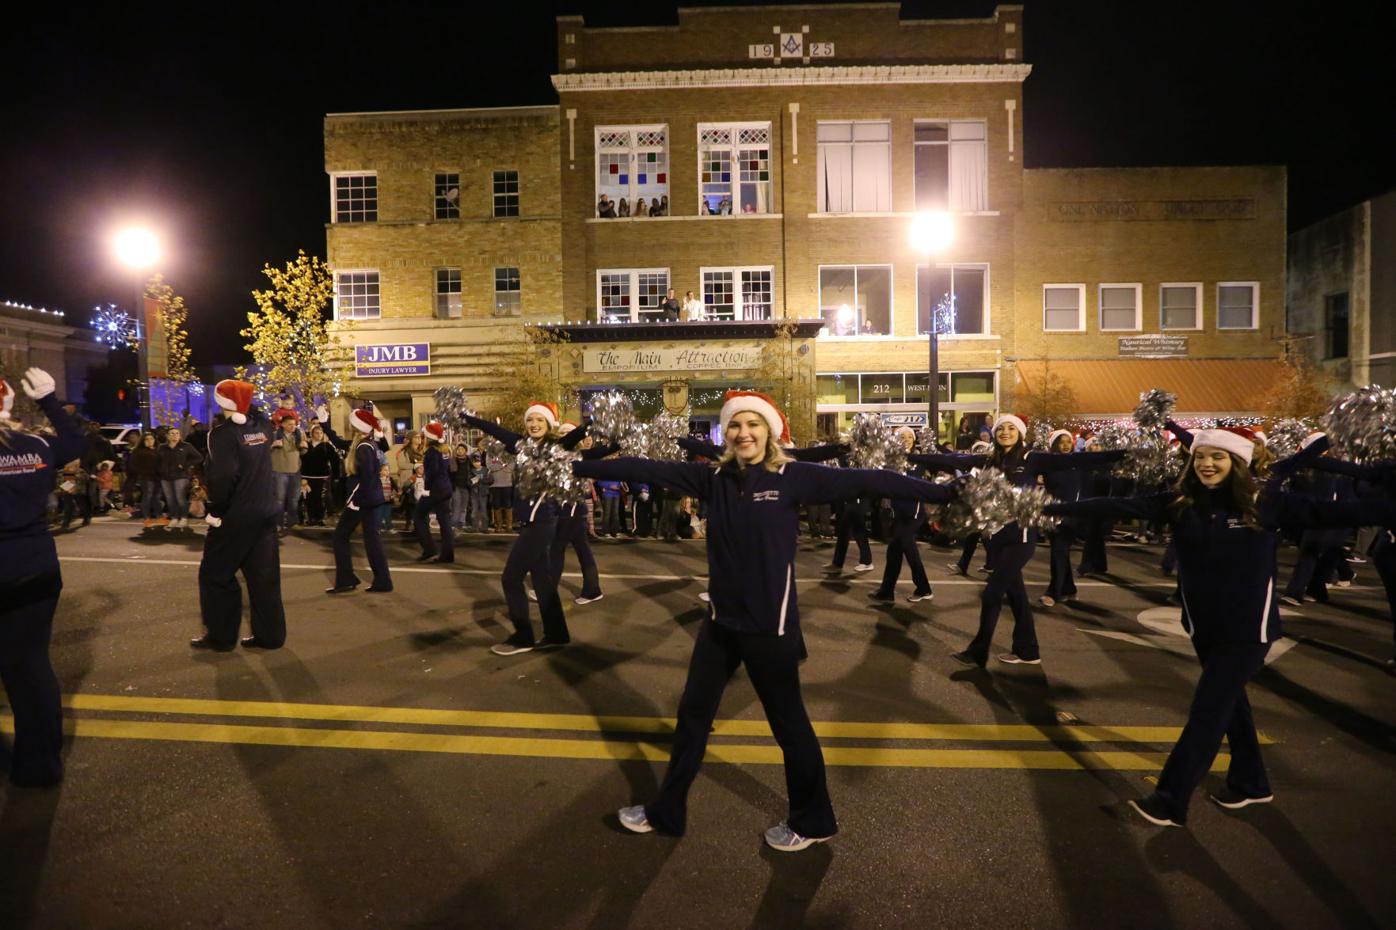 Community Christmas celebration Tupelo hosts annual parade News